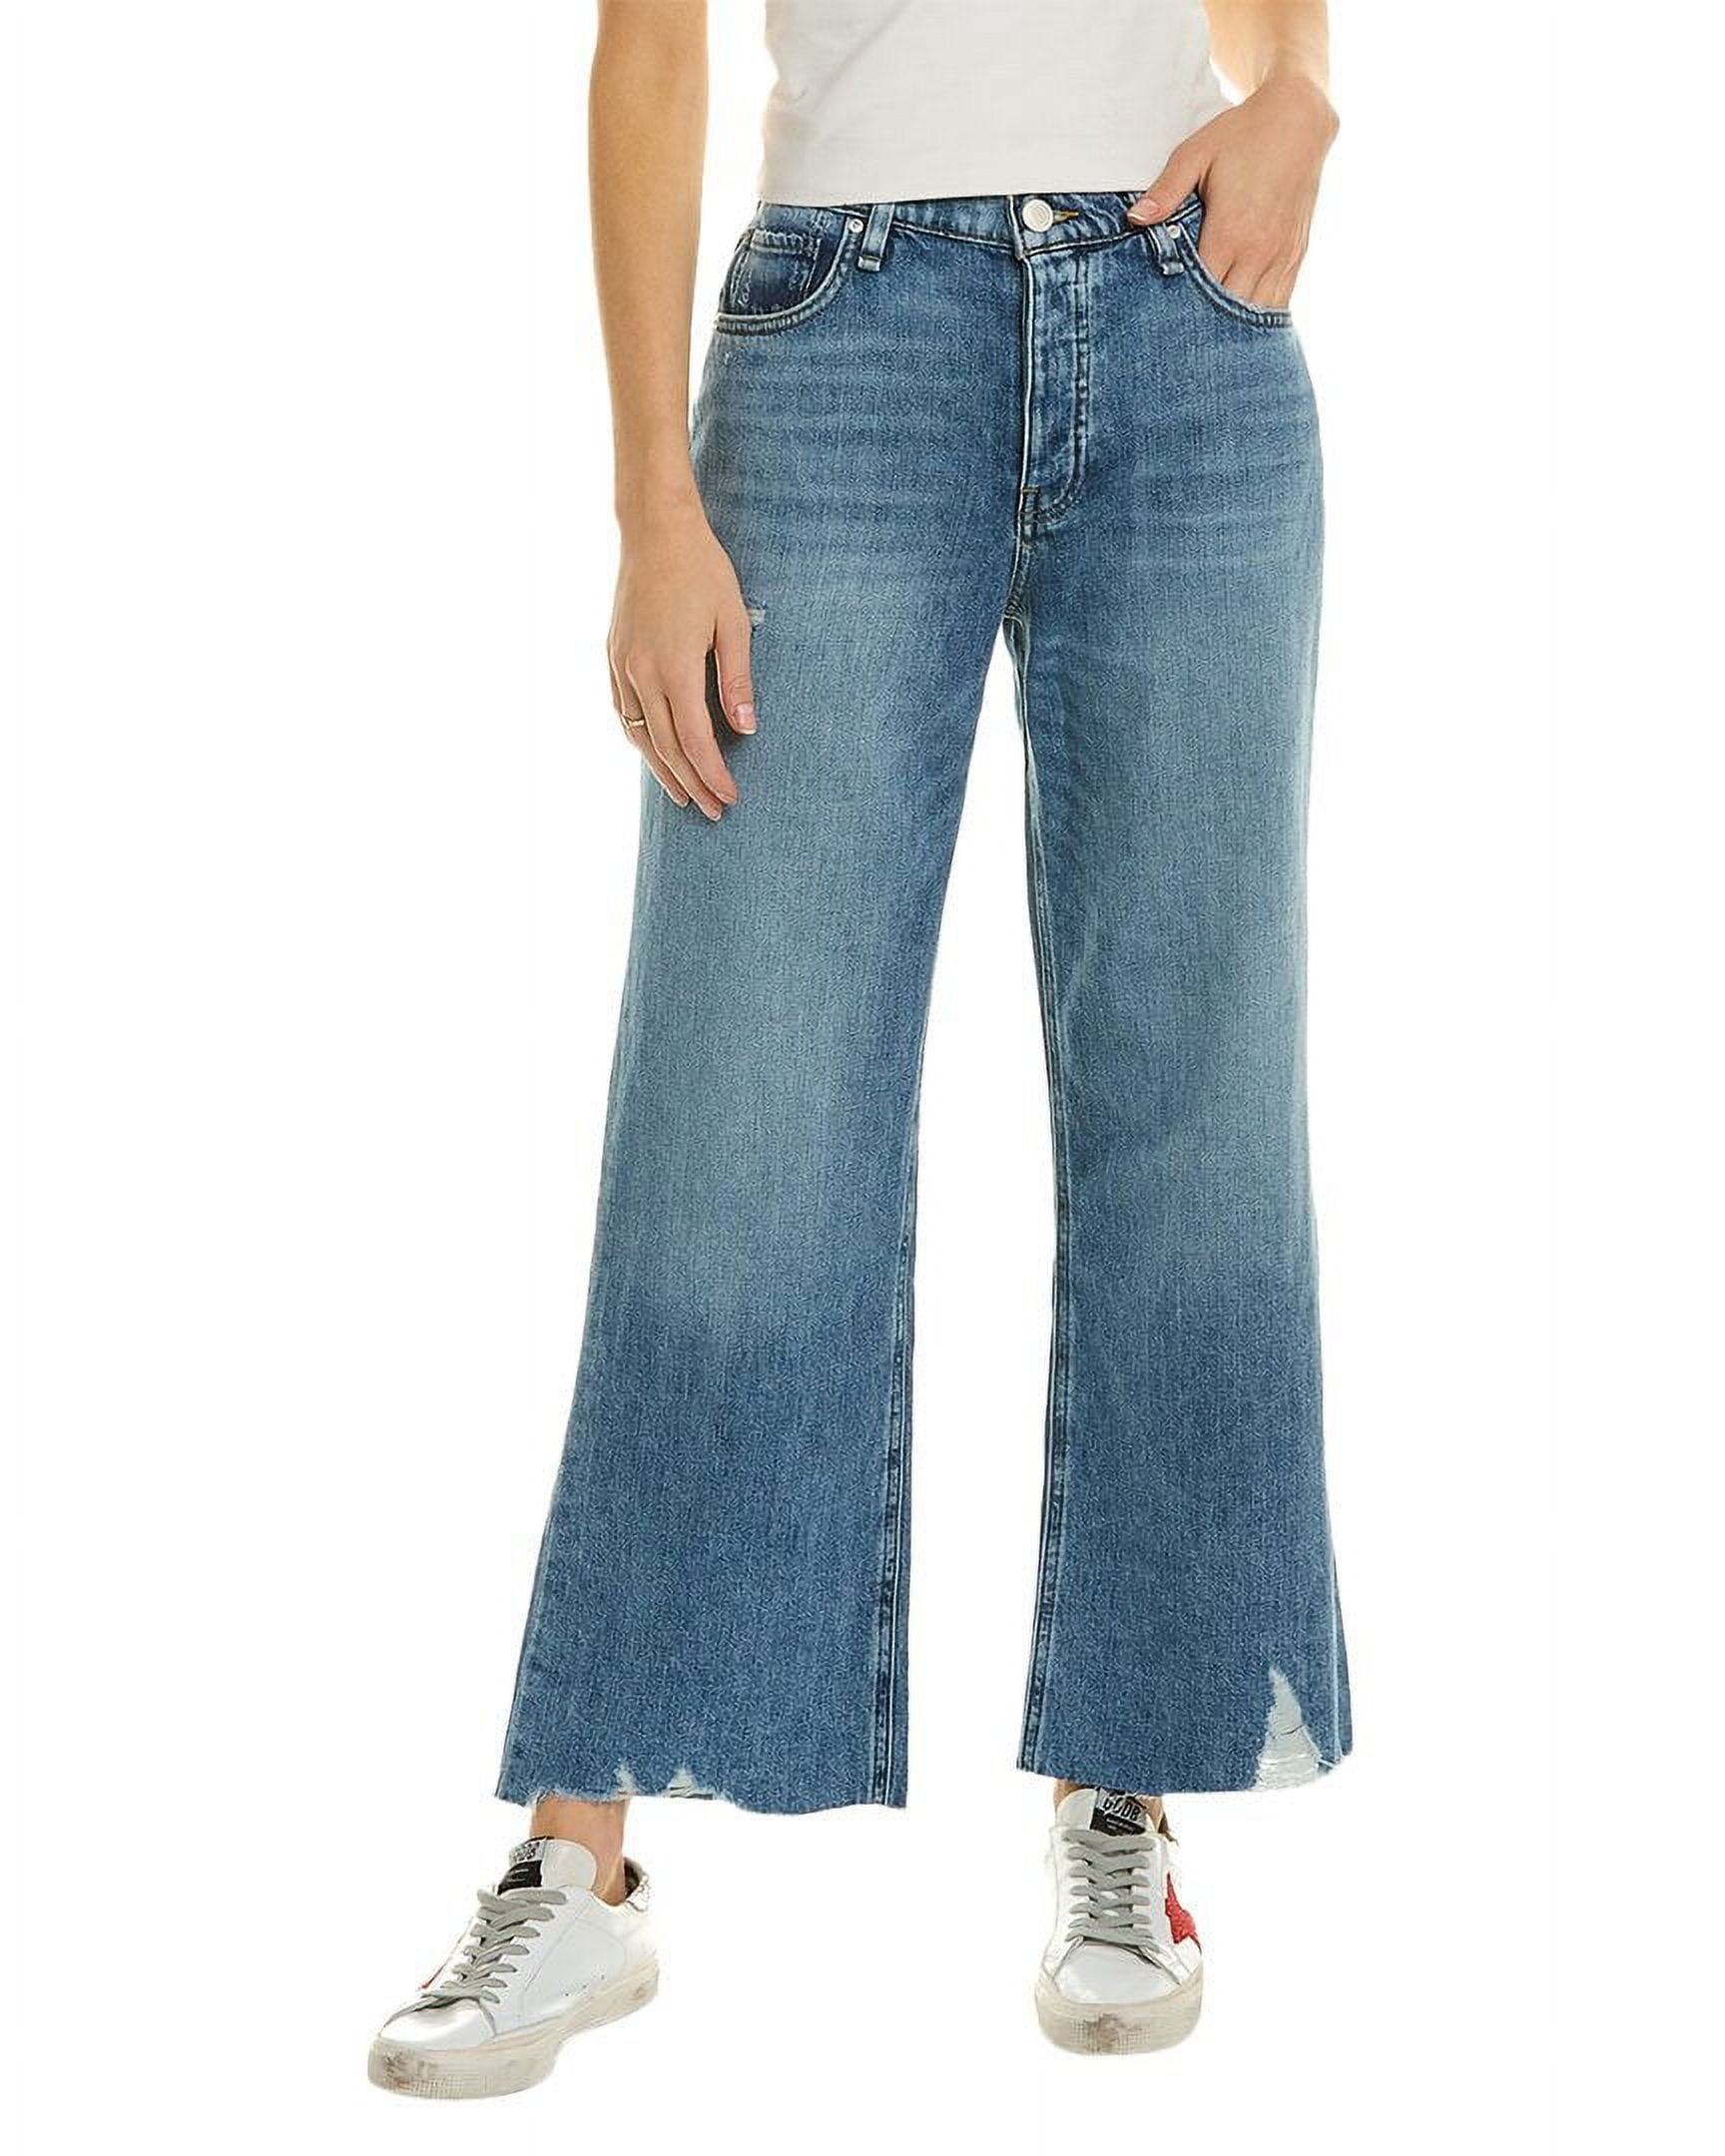 Y2k Grunge Sweatpants Mens Punk Vintage Pants Slacks Casual Straight Leg  Hip Hop Jeans at Amazon Men's Clothing store